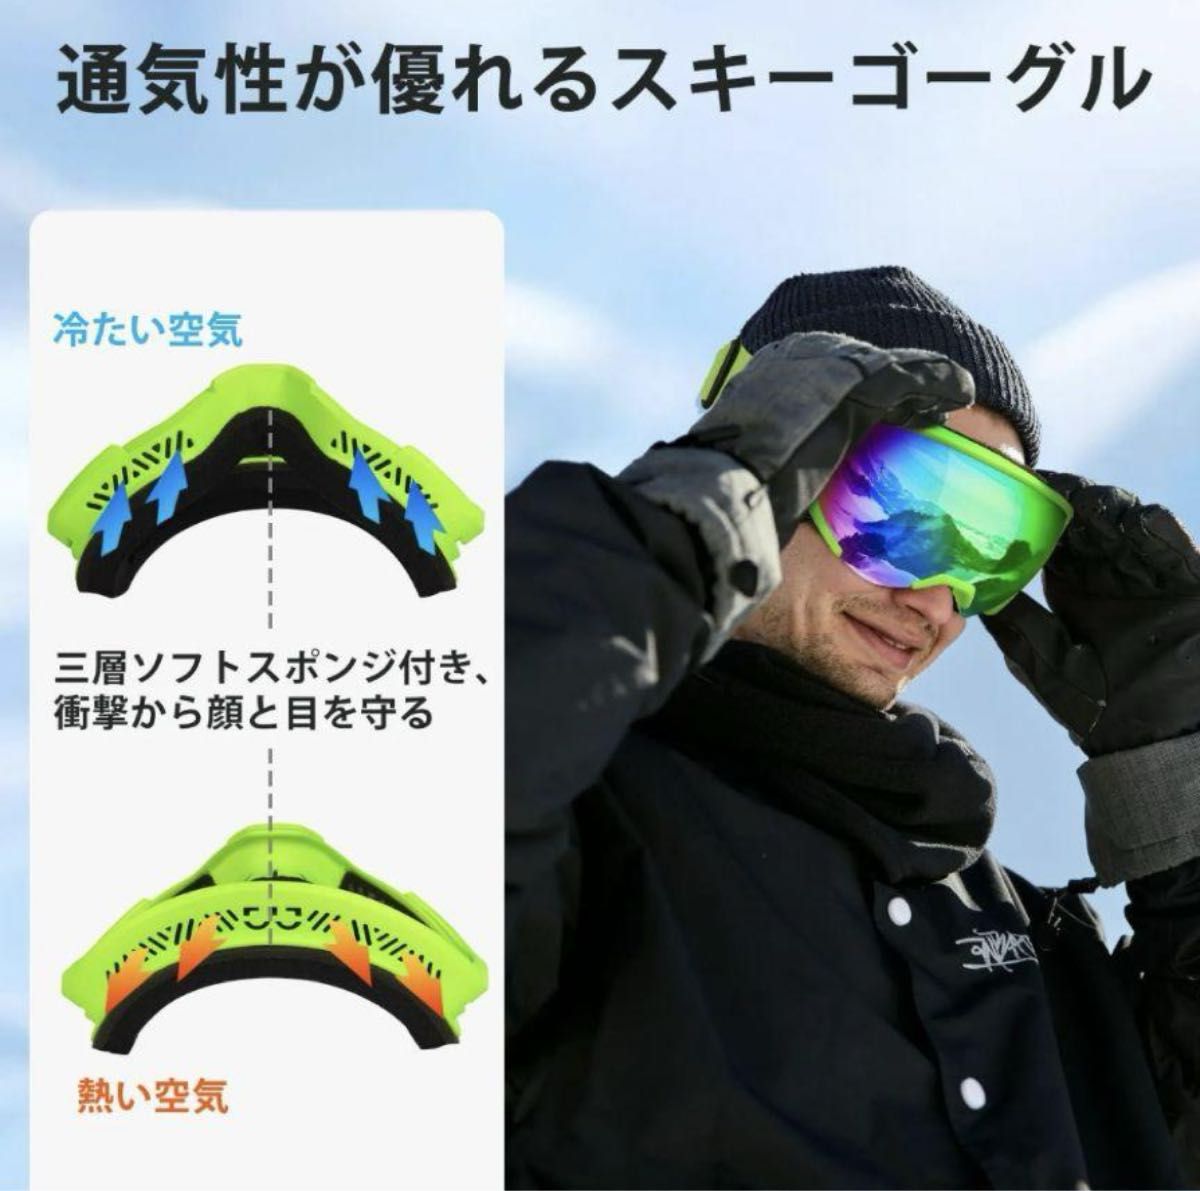 【スキーゴーグル】UVカット スノボー ゴーグル眼鏡対応 男女兼用